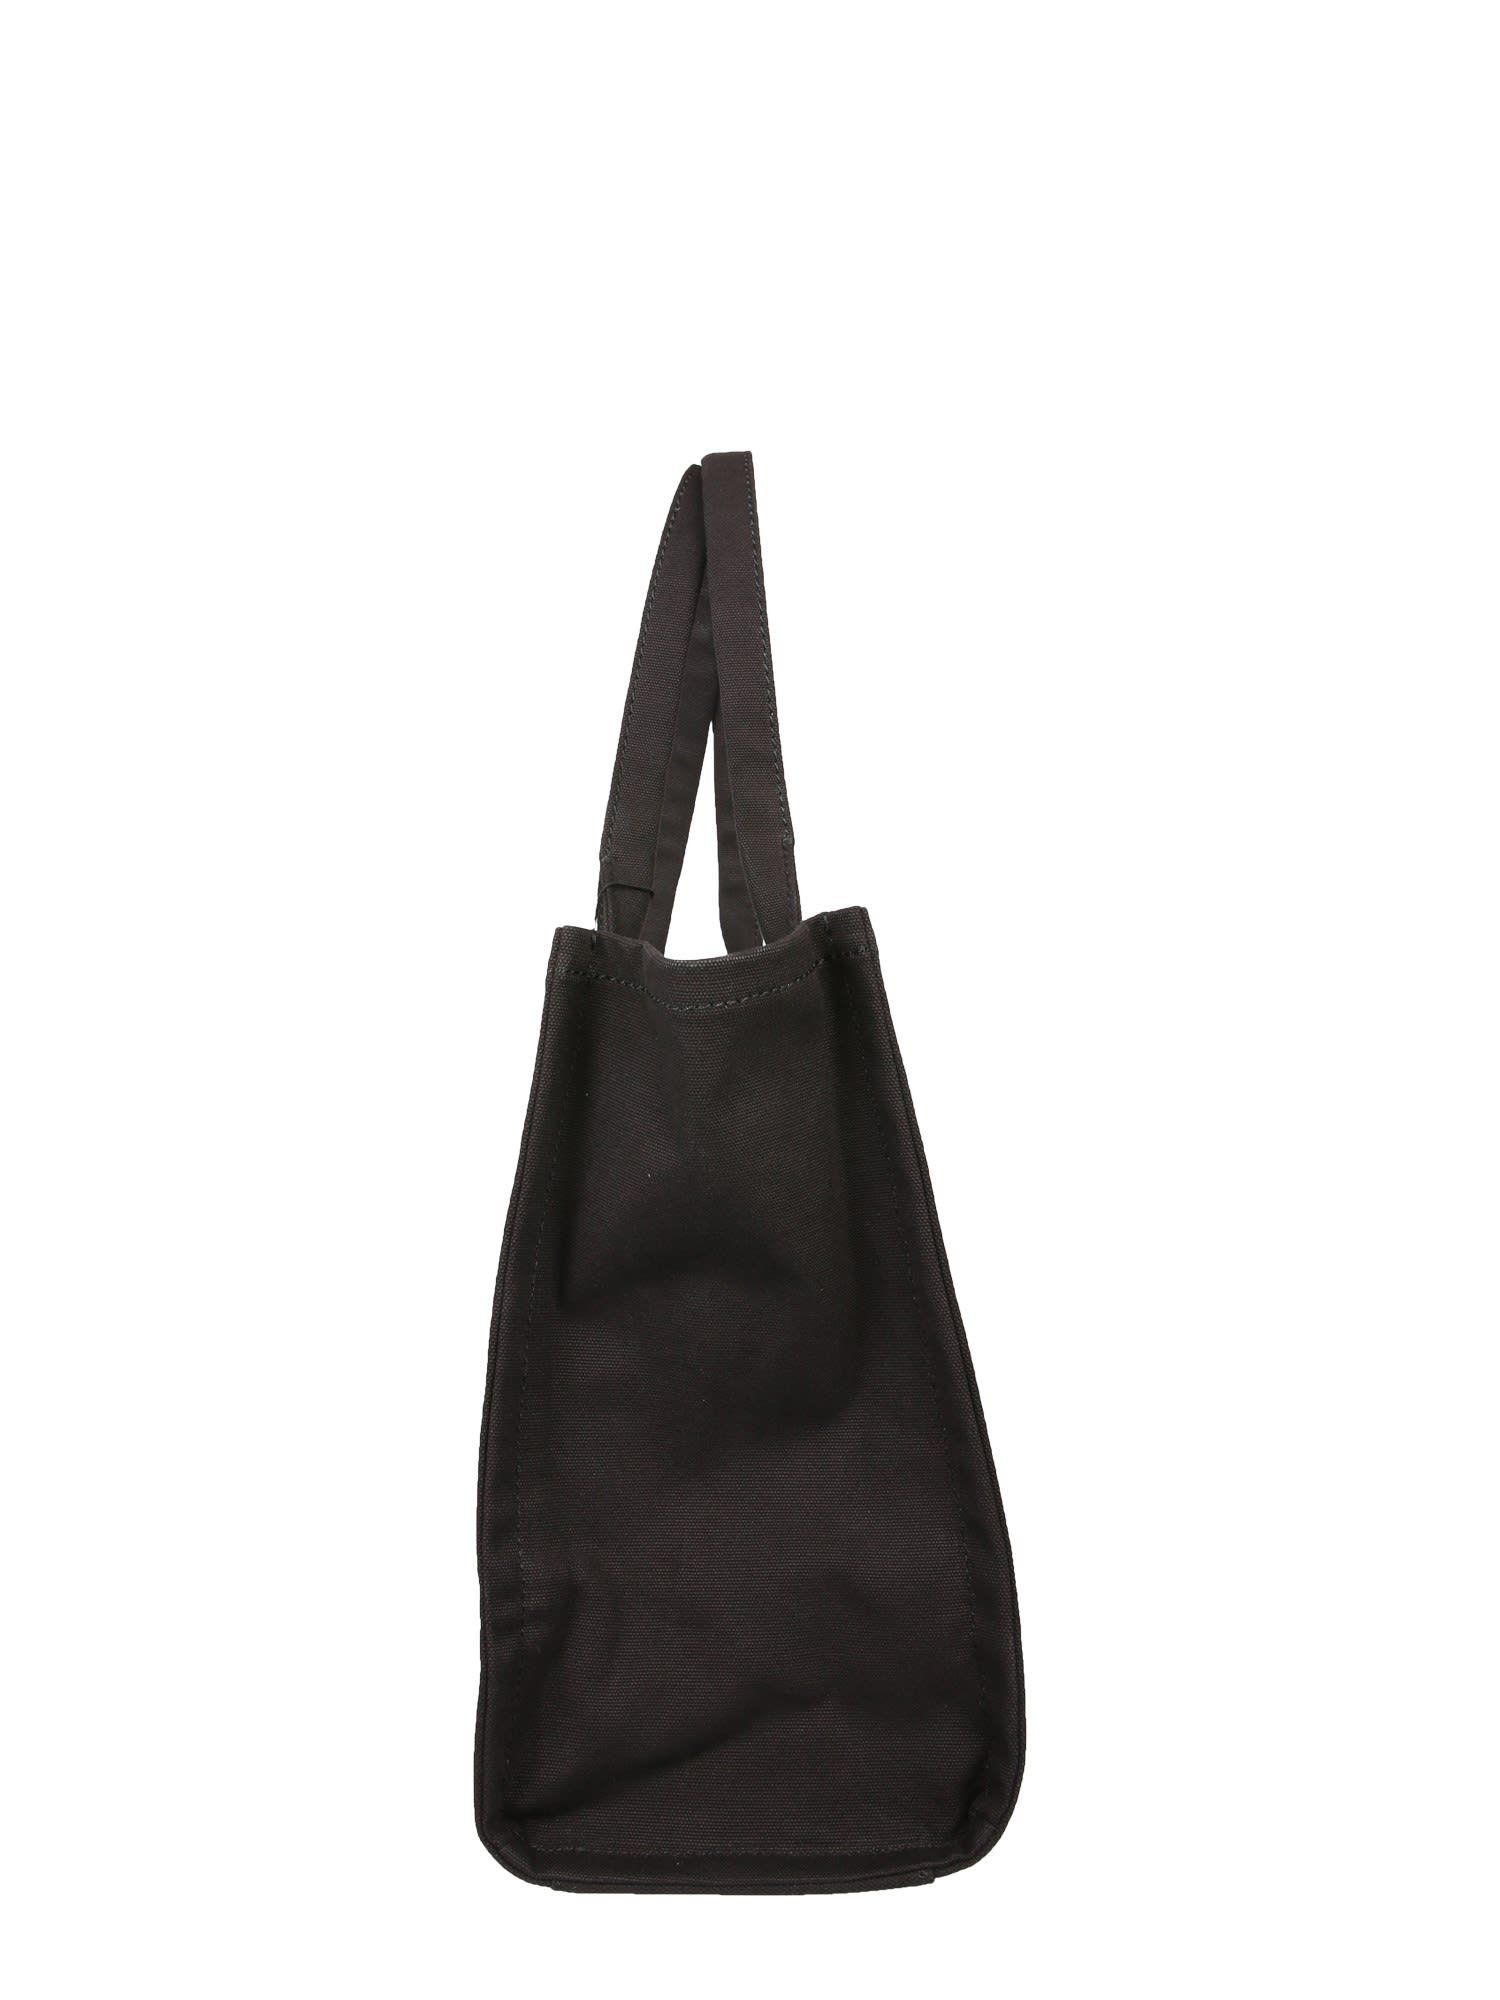 Shop Marc Jacobs Traveler Tote Bag In Black